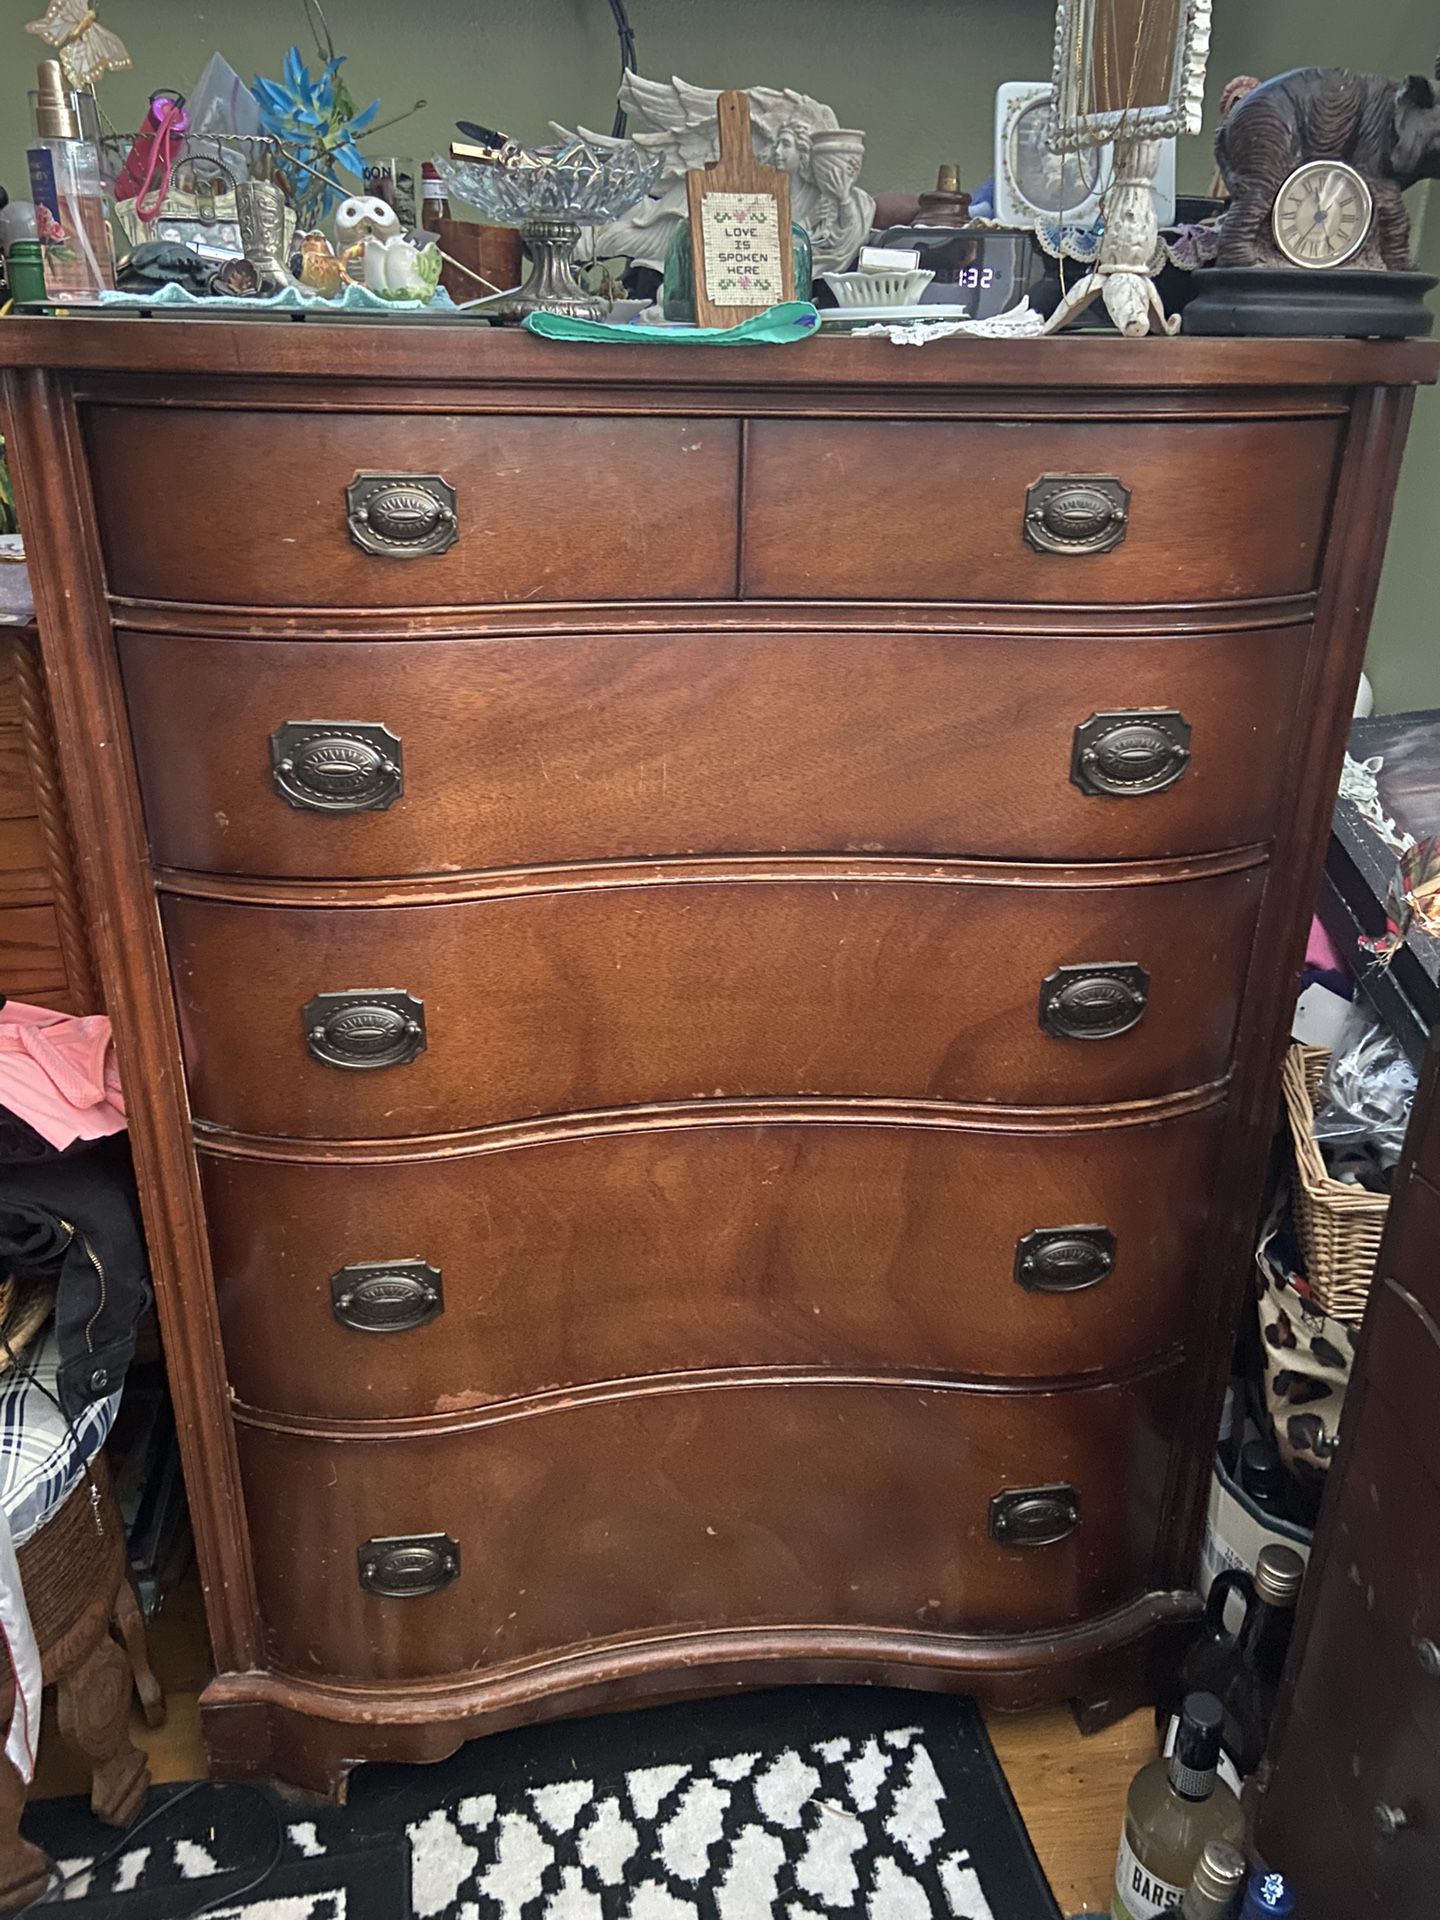 5 Drawer Dresser, Antique Dresser, Vintage Dresser 